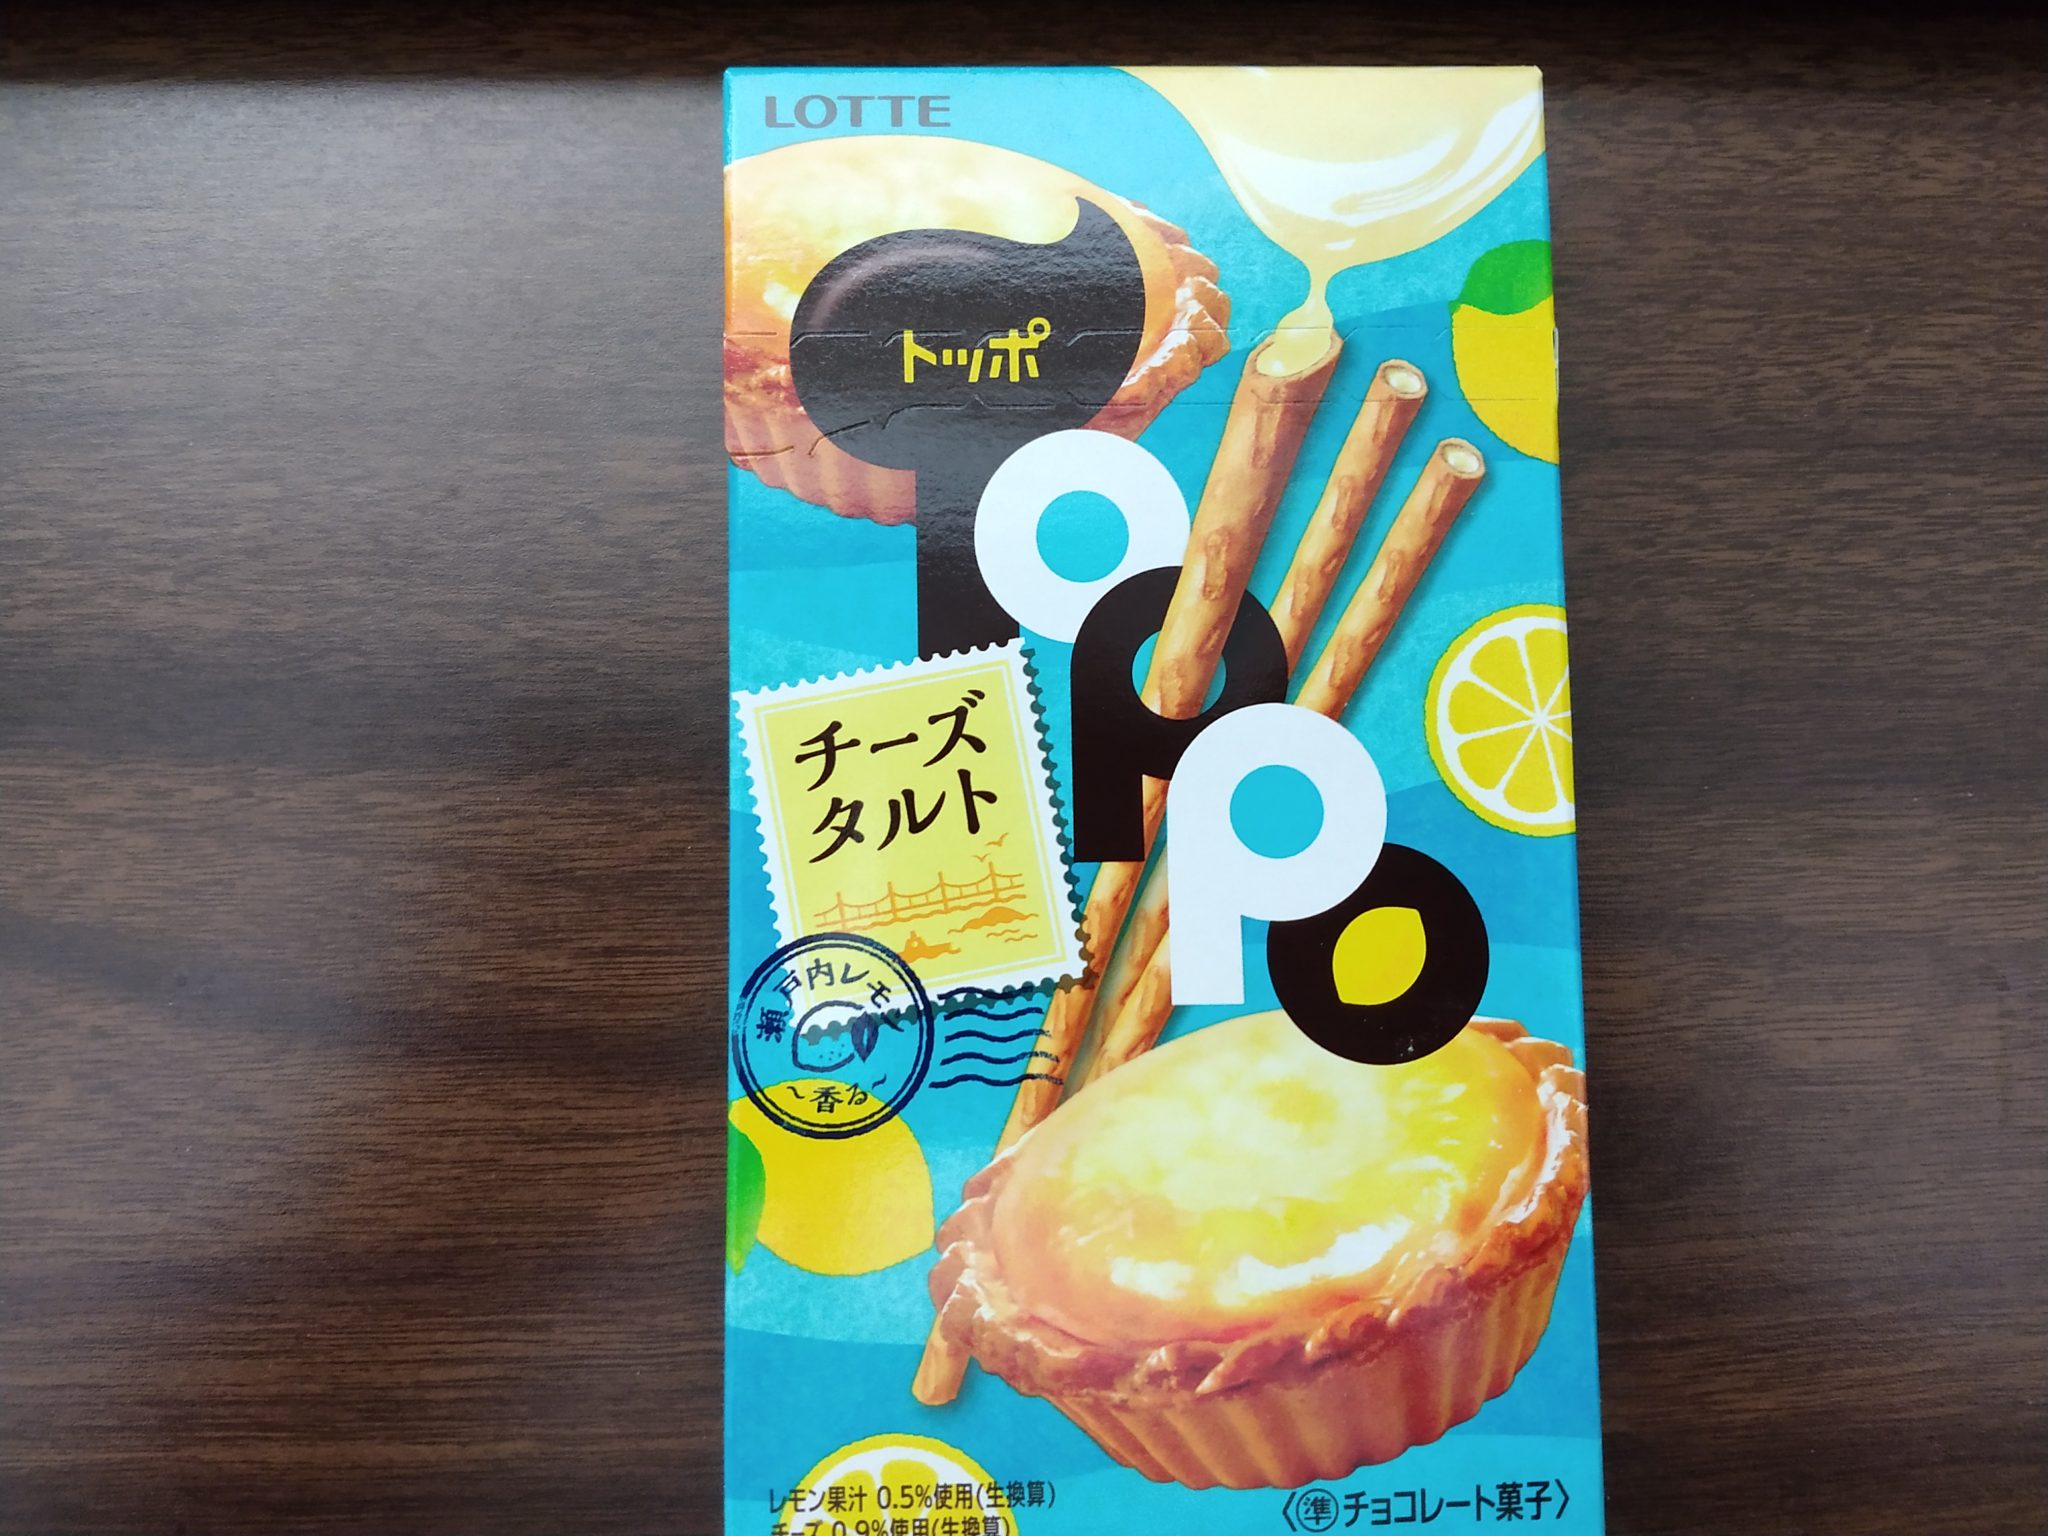 Toppo – Lemon Cheese Tart